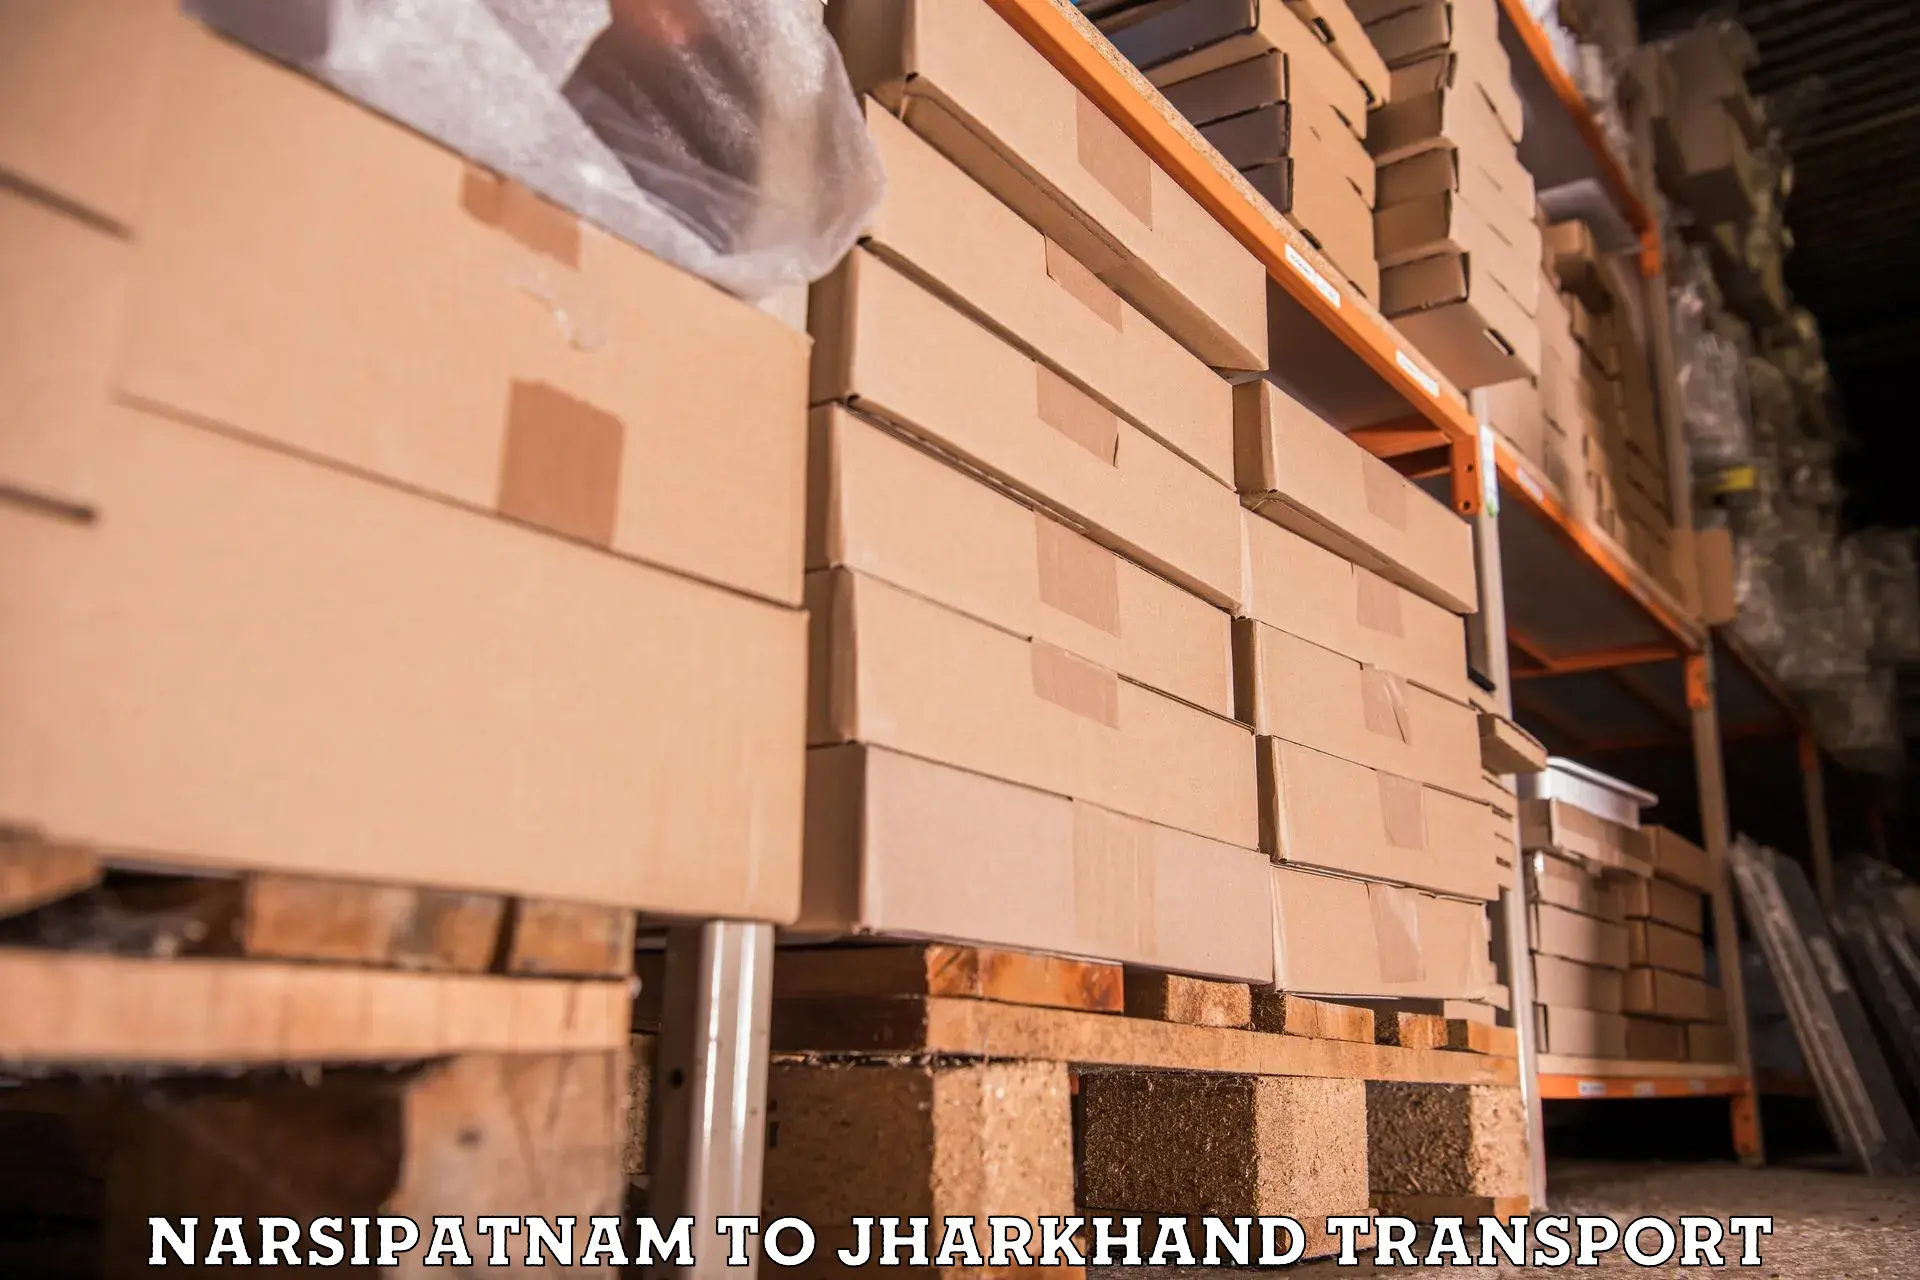 Delivery service Narsipatnam to Tisri